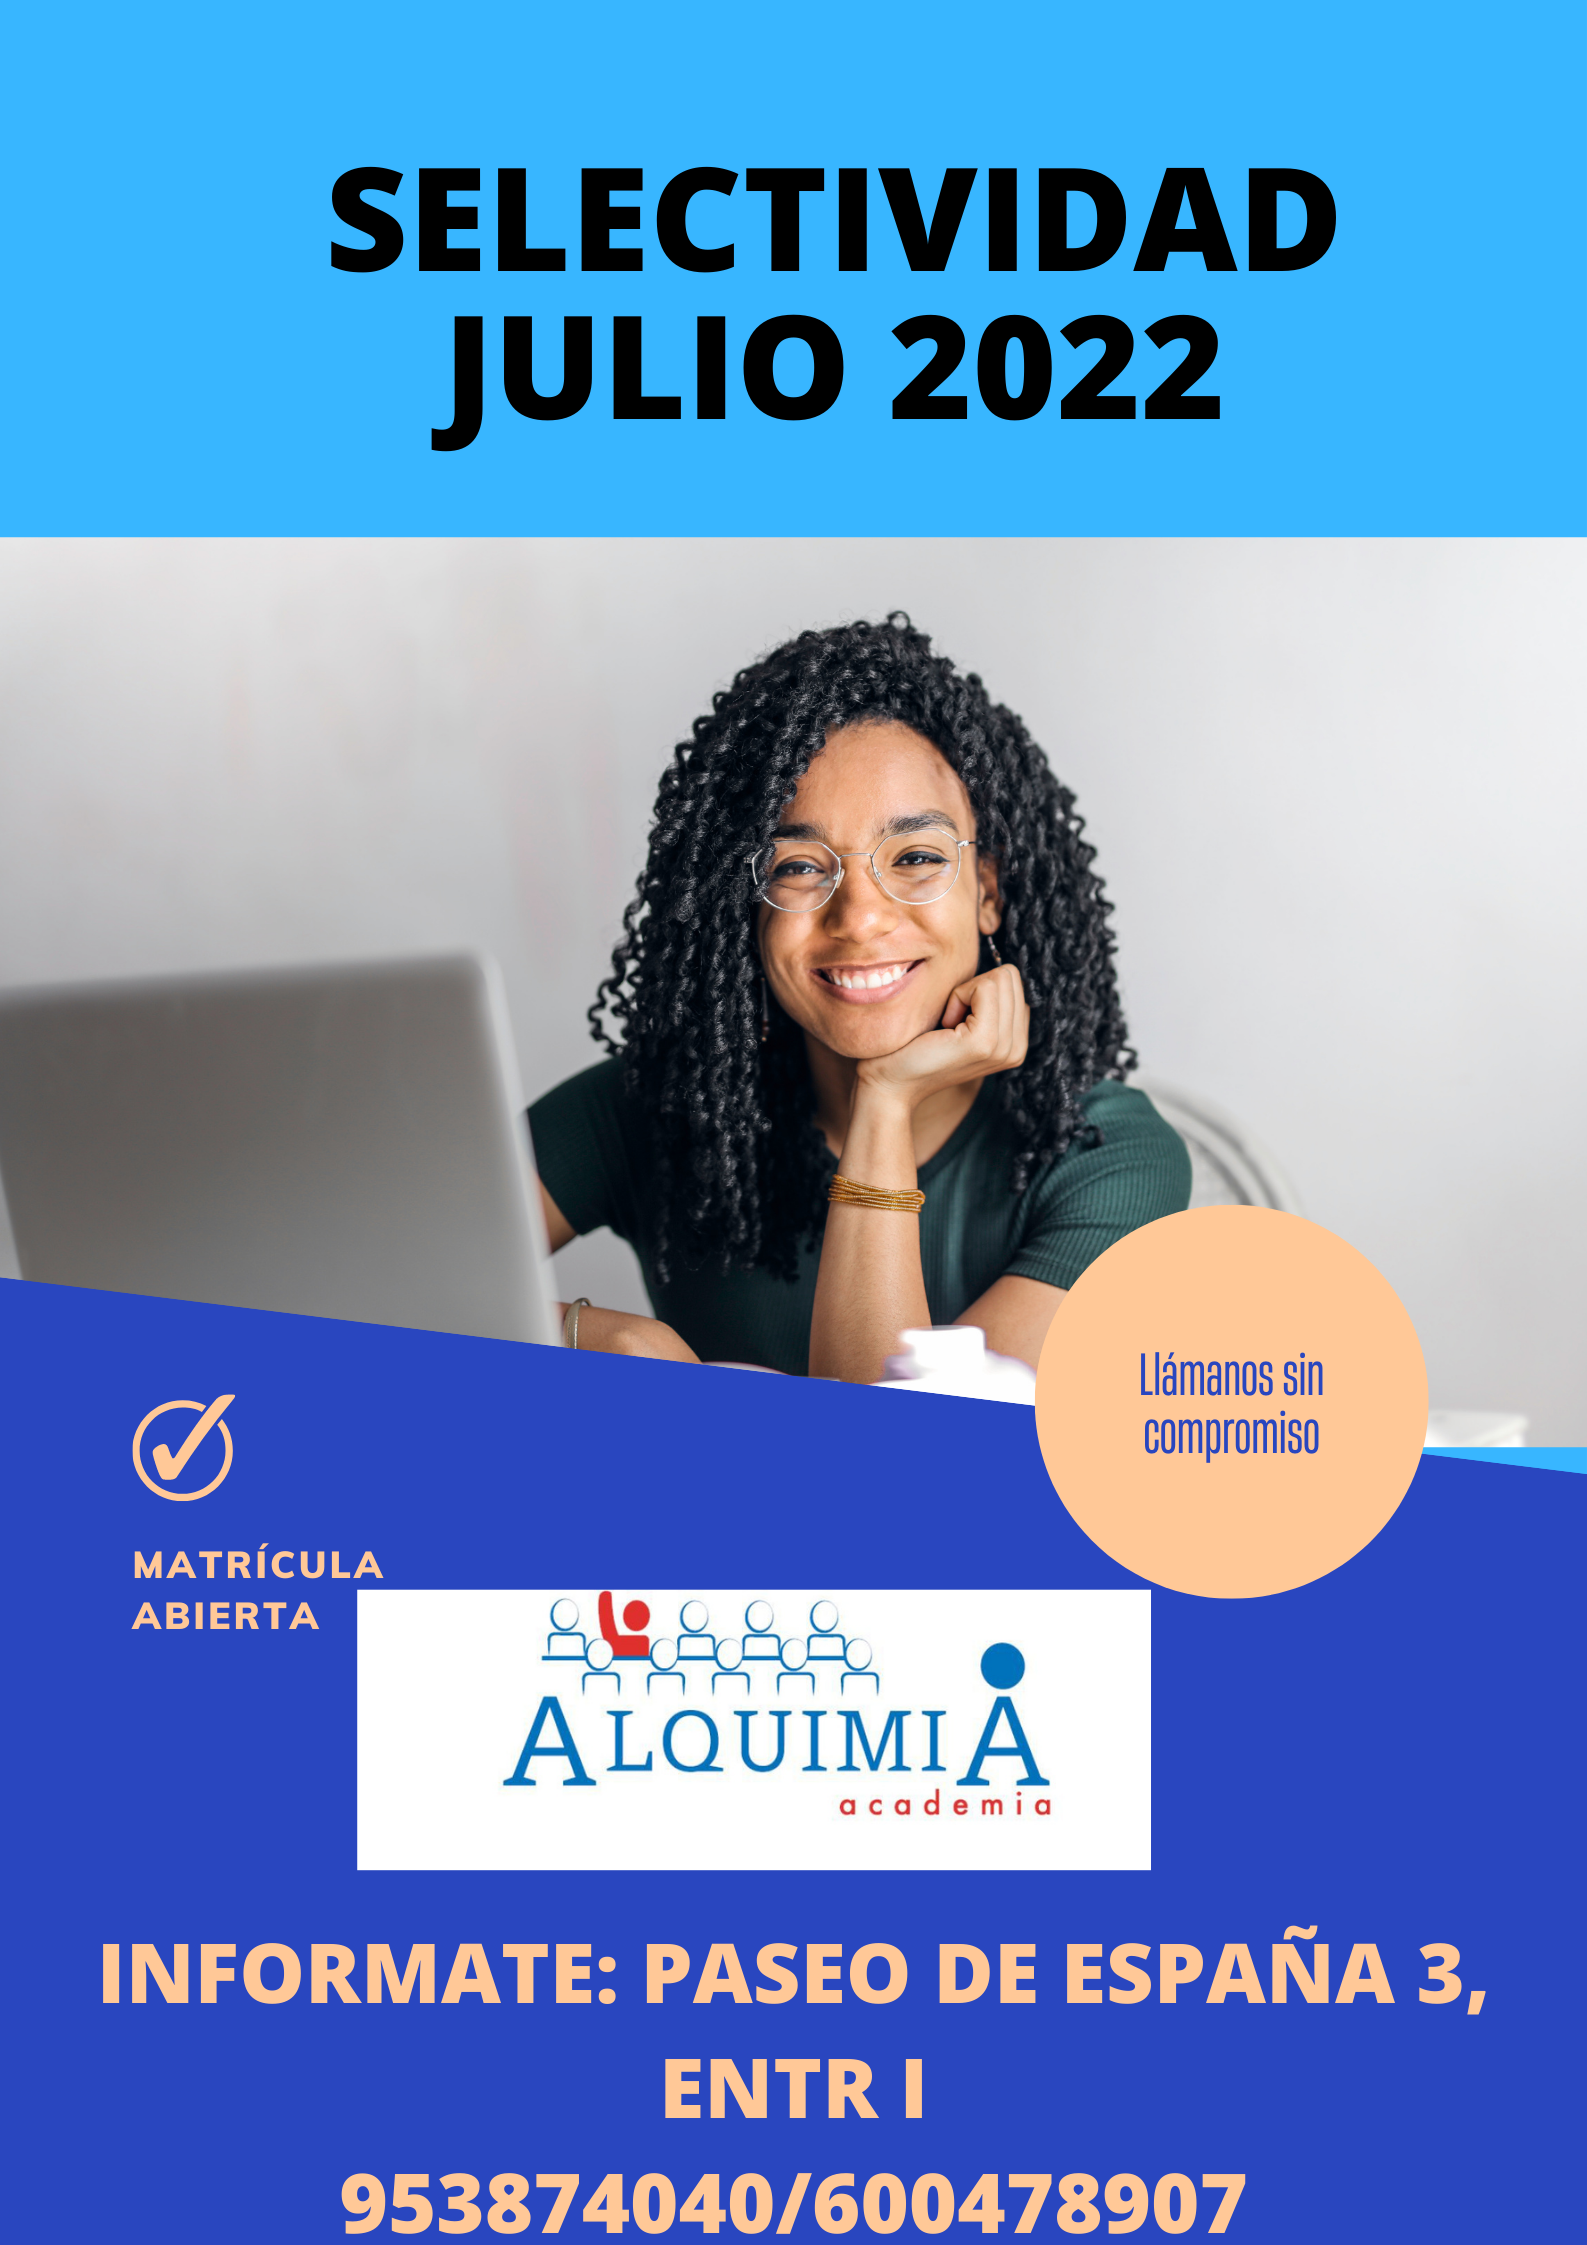 INTENSIVO SELECTIVIDAD JULIO 2022: NUESTRA OFERTA FORMATIVA de Alquimia